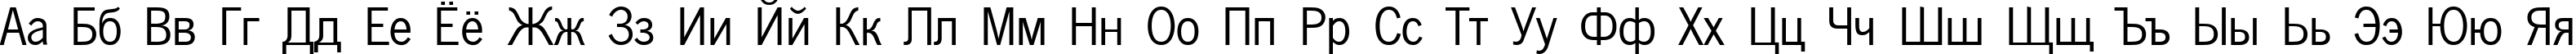 Пример написания русского алфавита шрифтом NewsPaperCTT